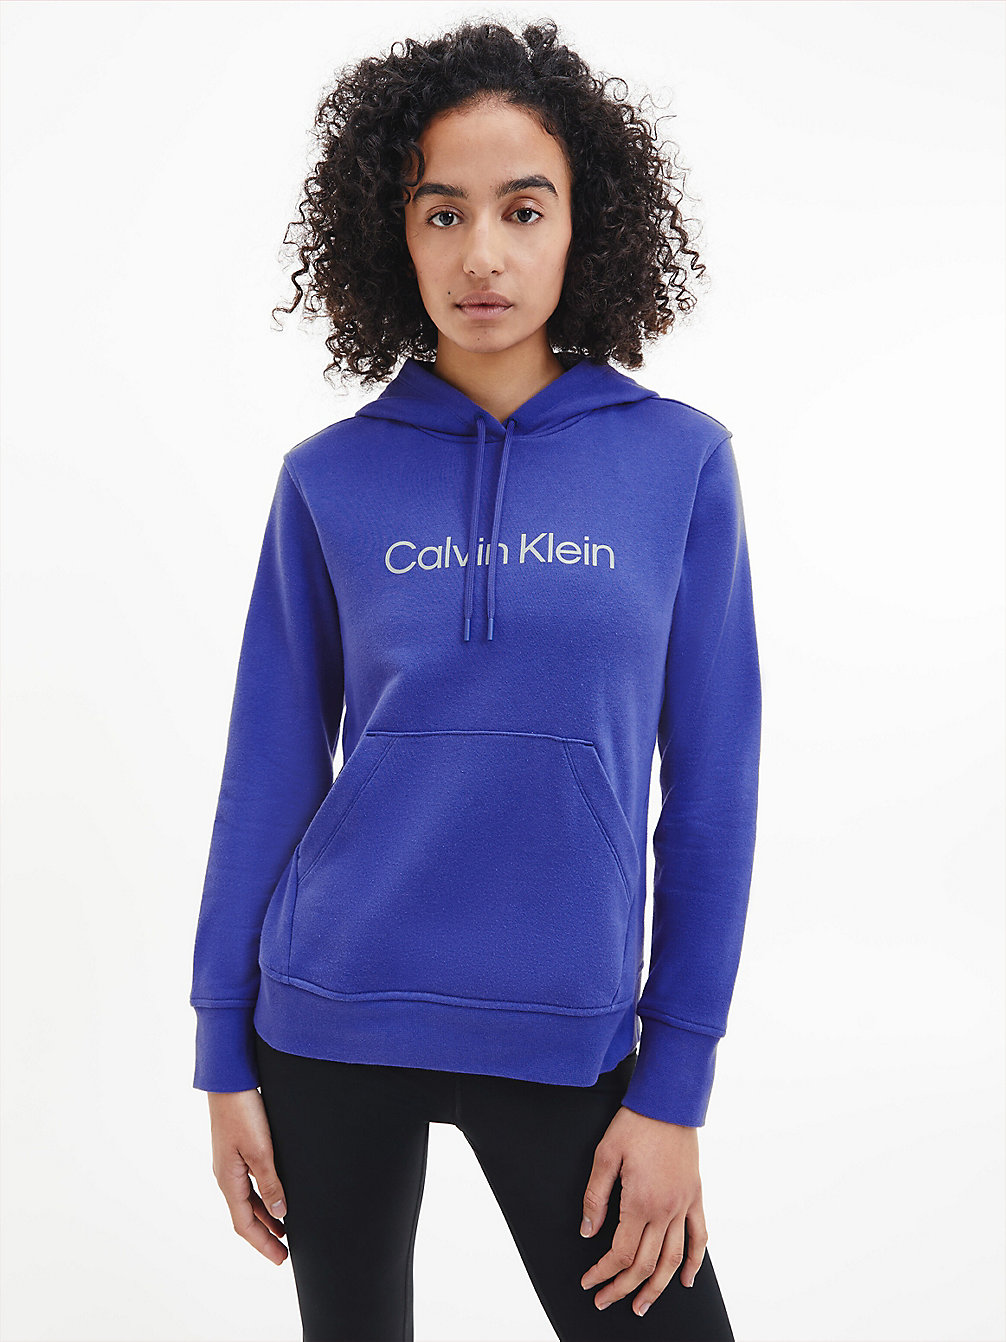 CLEMATIS BLUE Sweat À Capuche Avec Logo En Tissu Éponge De Coton undefined femmes Calvin Klein